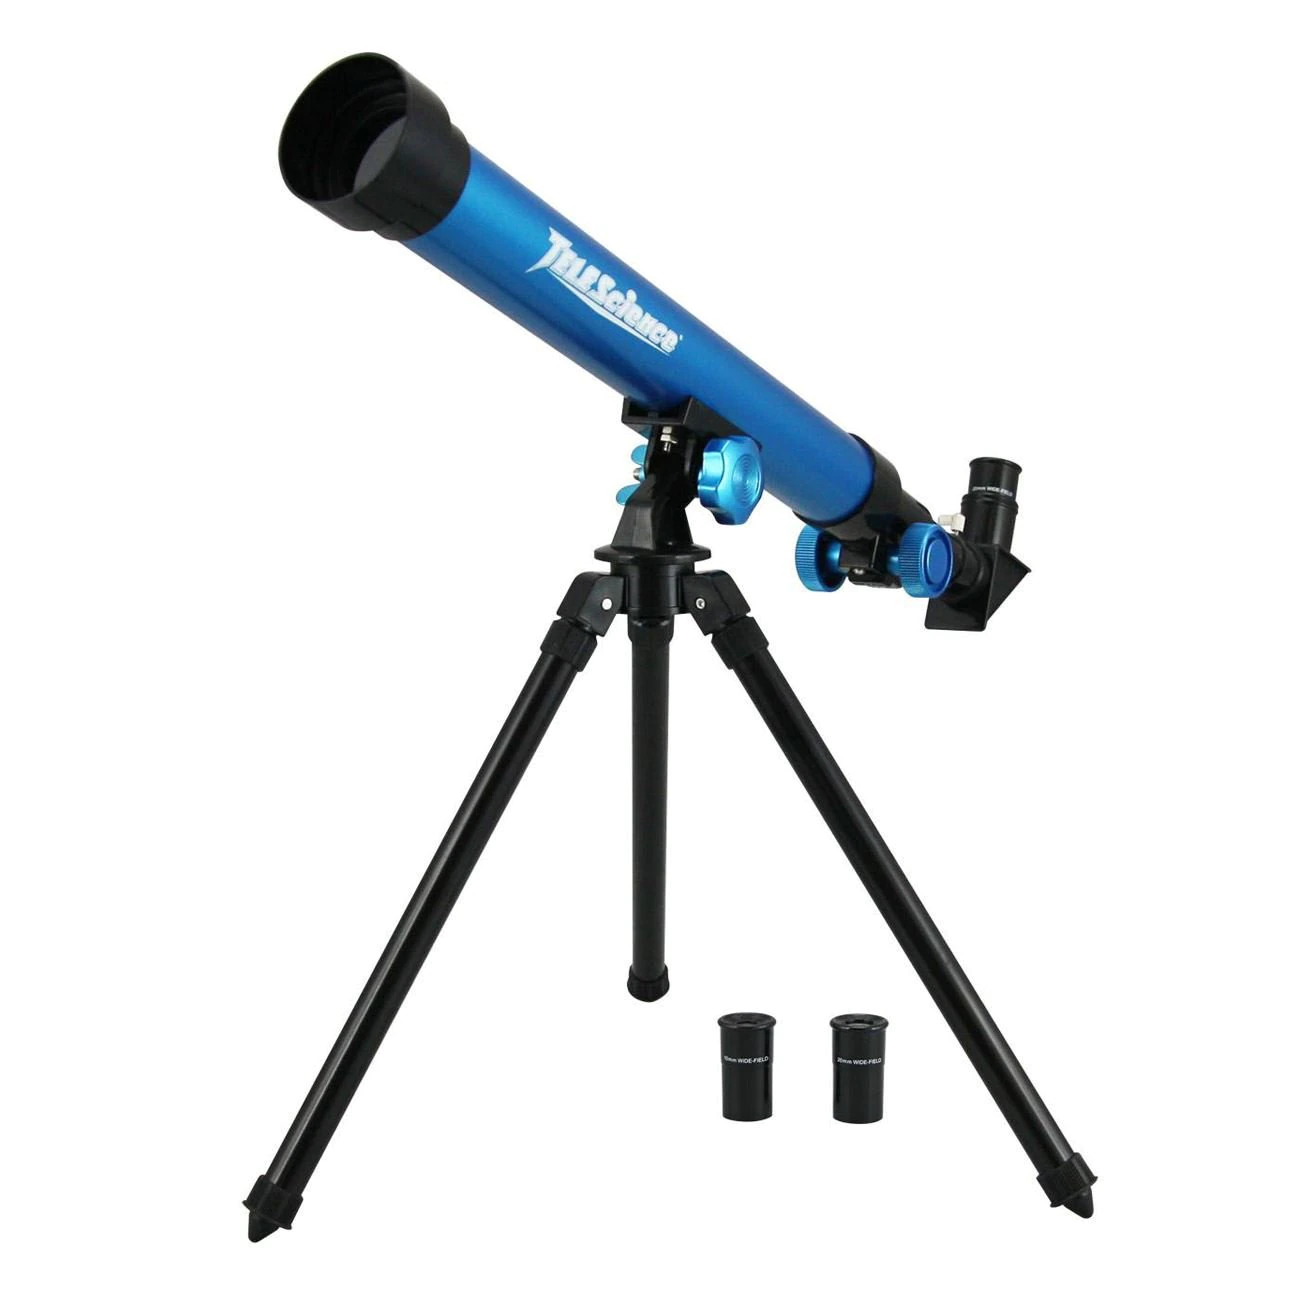 Telescop albastru pentru copii, cu aplicatie de mobil, Lioness, 64 x 8 x 20 cm